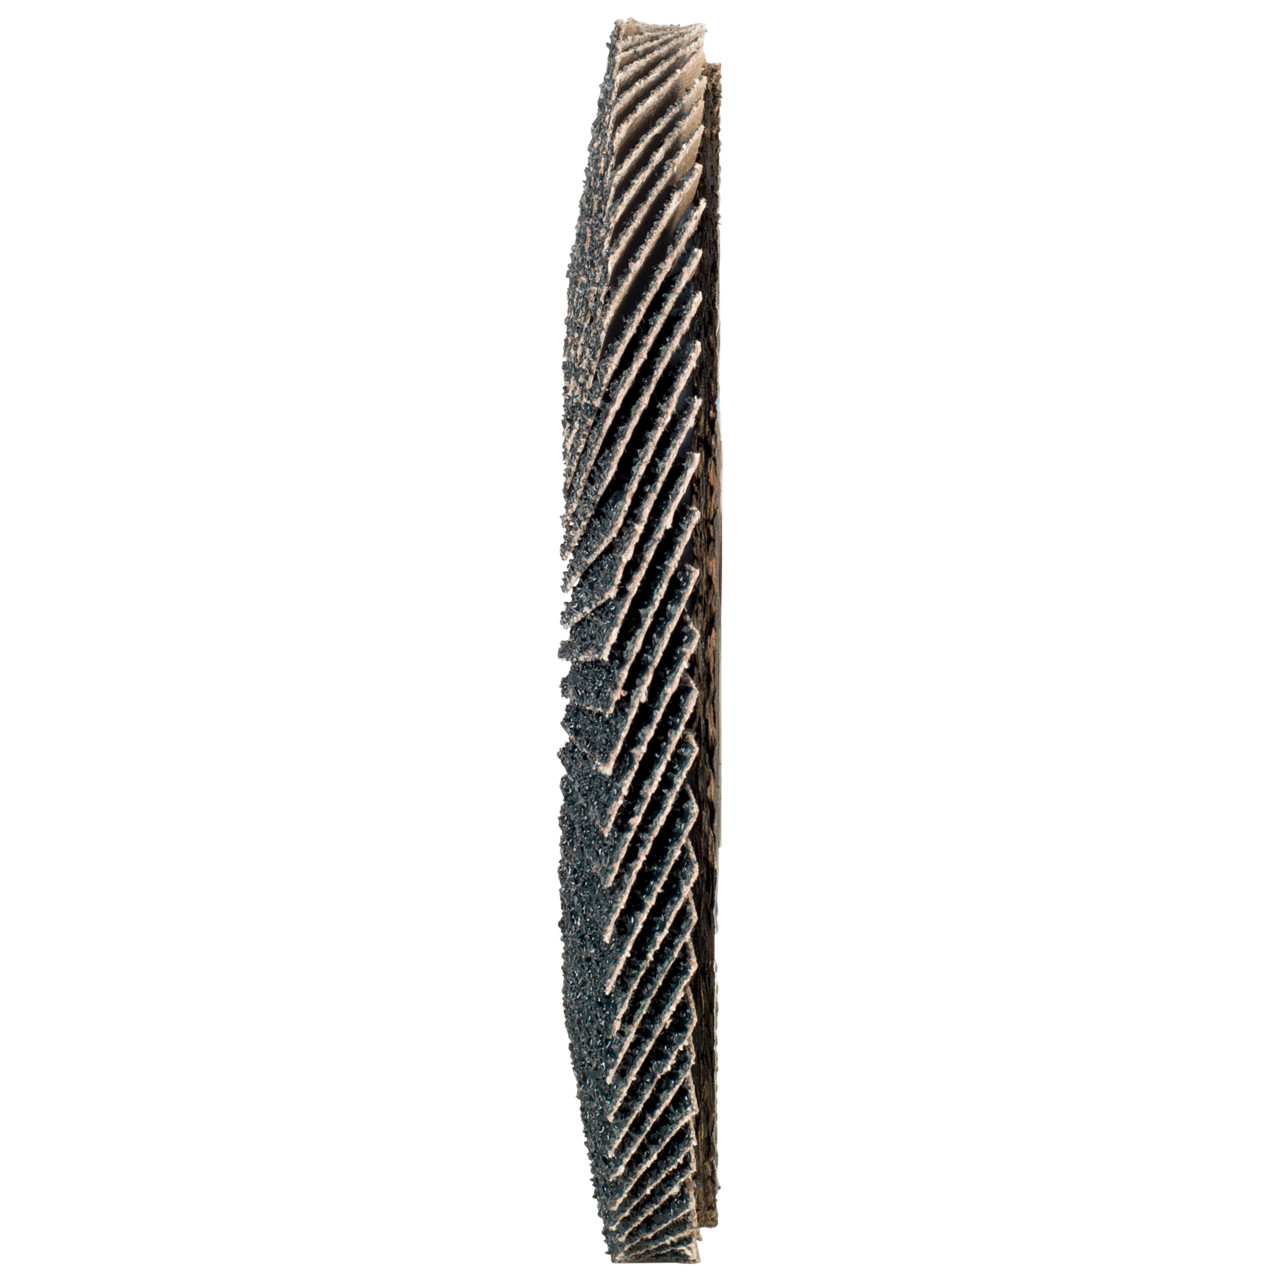 Tyrolit Getande borgring DxH 125x22,2 2in1 voor staal &amp; roestvrij staal, P40, vorm: 28A - rechte versie (glasvezeldragerhuisversie), Art. 668692